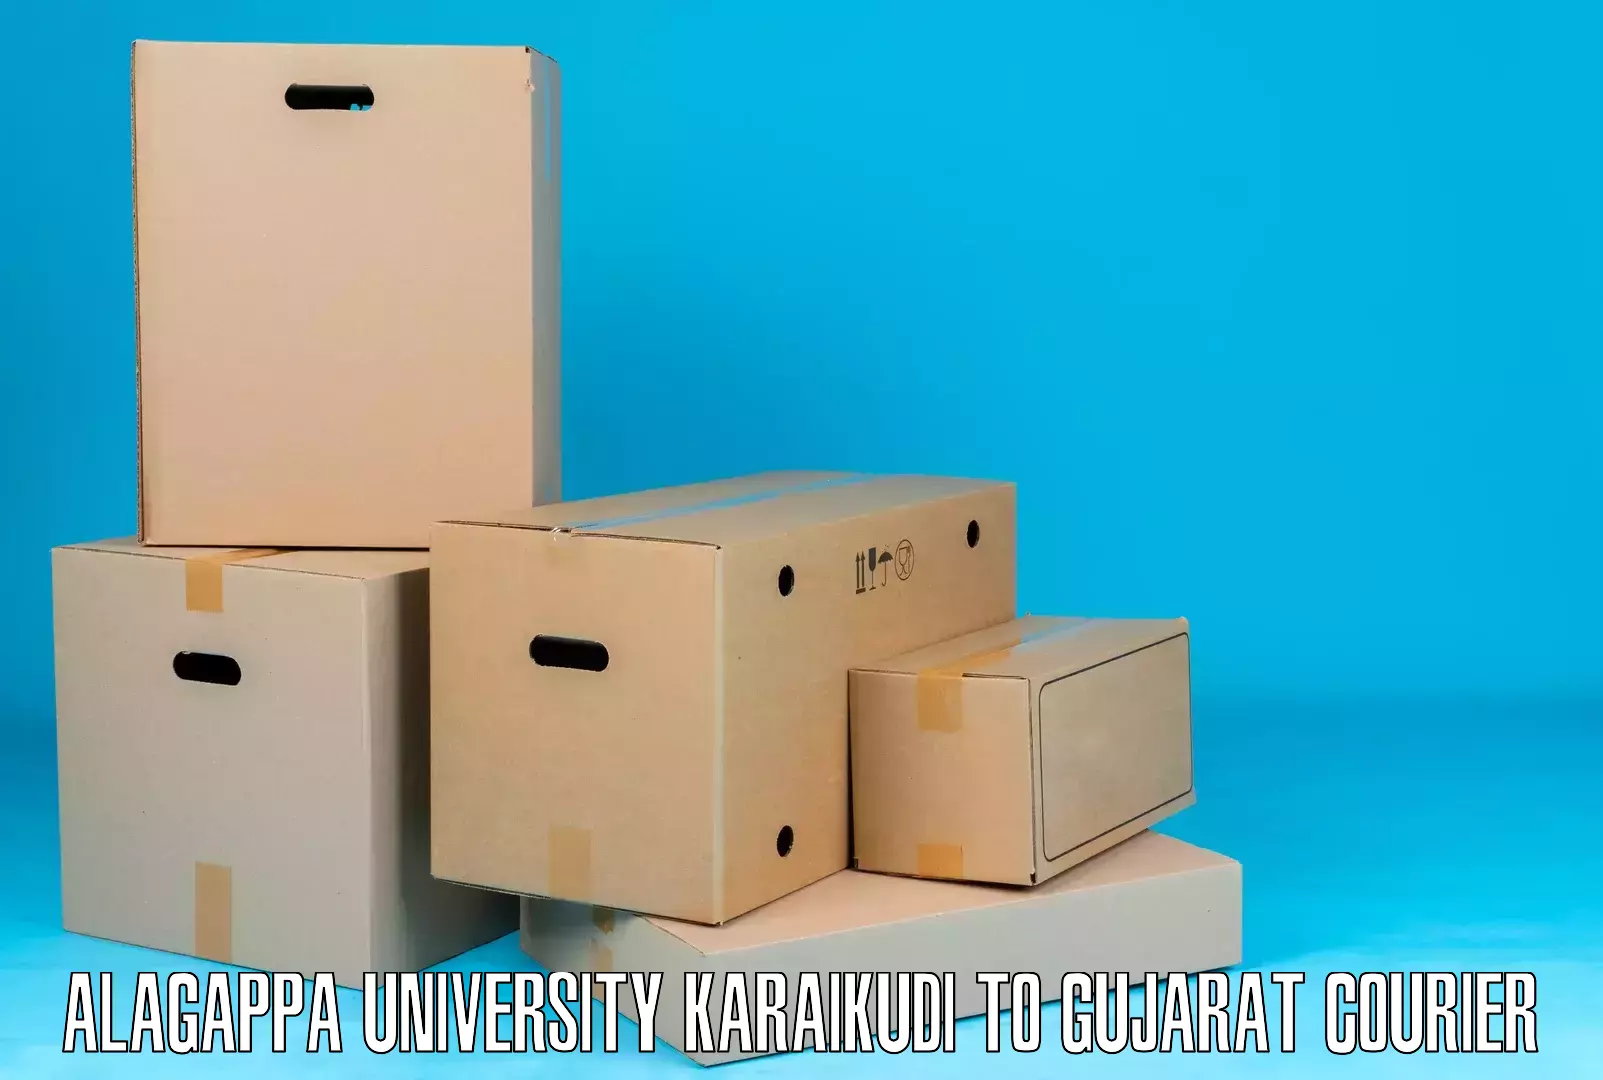 Global freight services Alagappa University Karaikudi to Gujarat